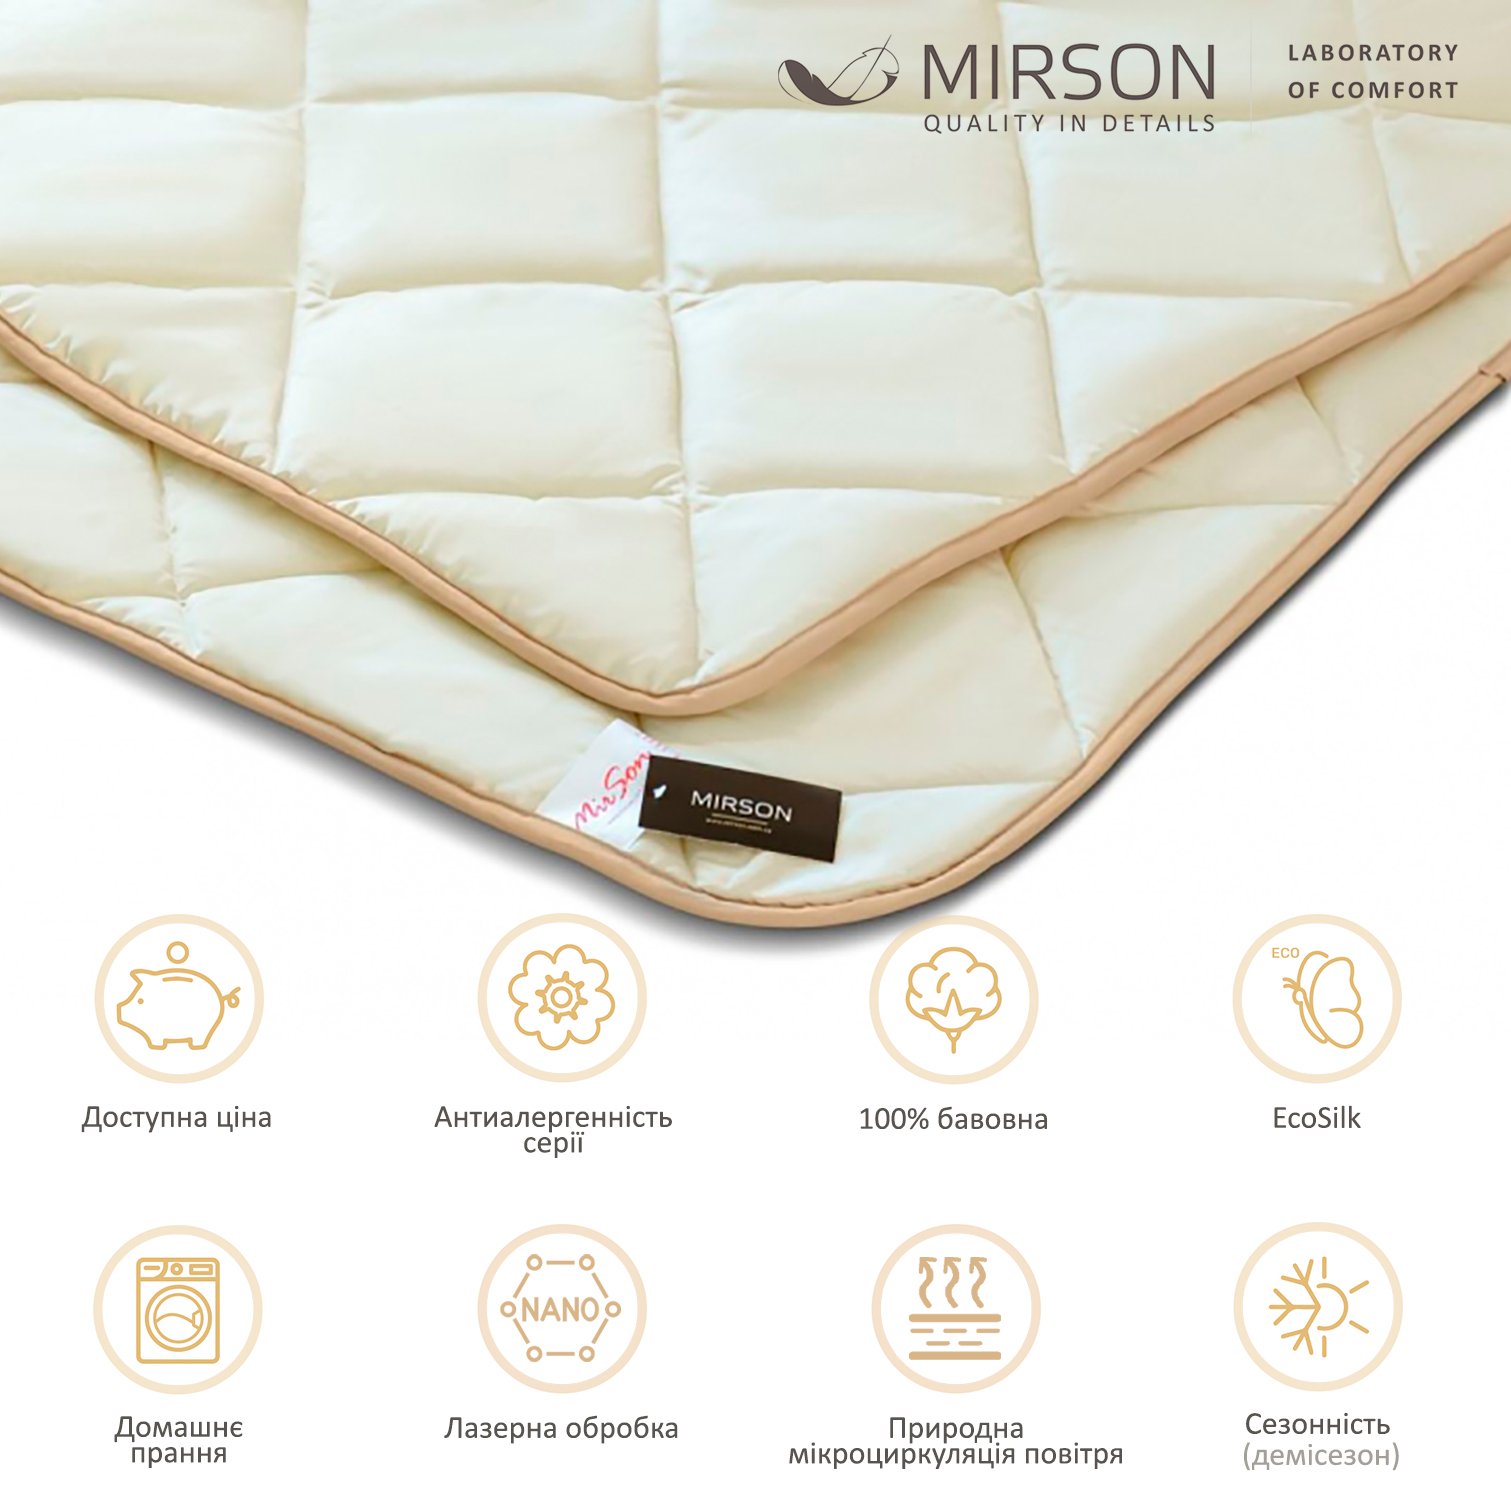 Одеяло антиаллергенное MirSon Carmela EcoSilk №011, демисезонное, 140x205 см, бежевое (8062967) - фото 5